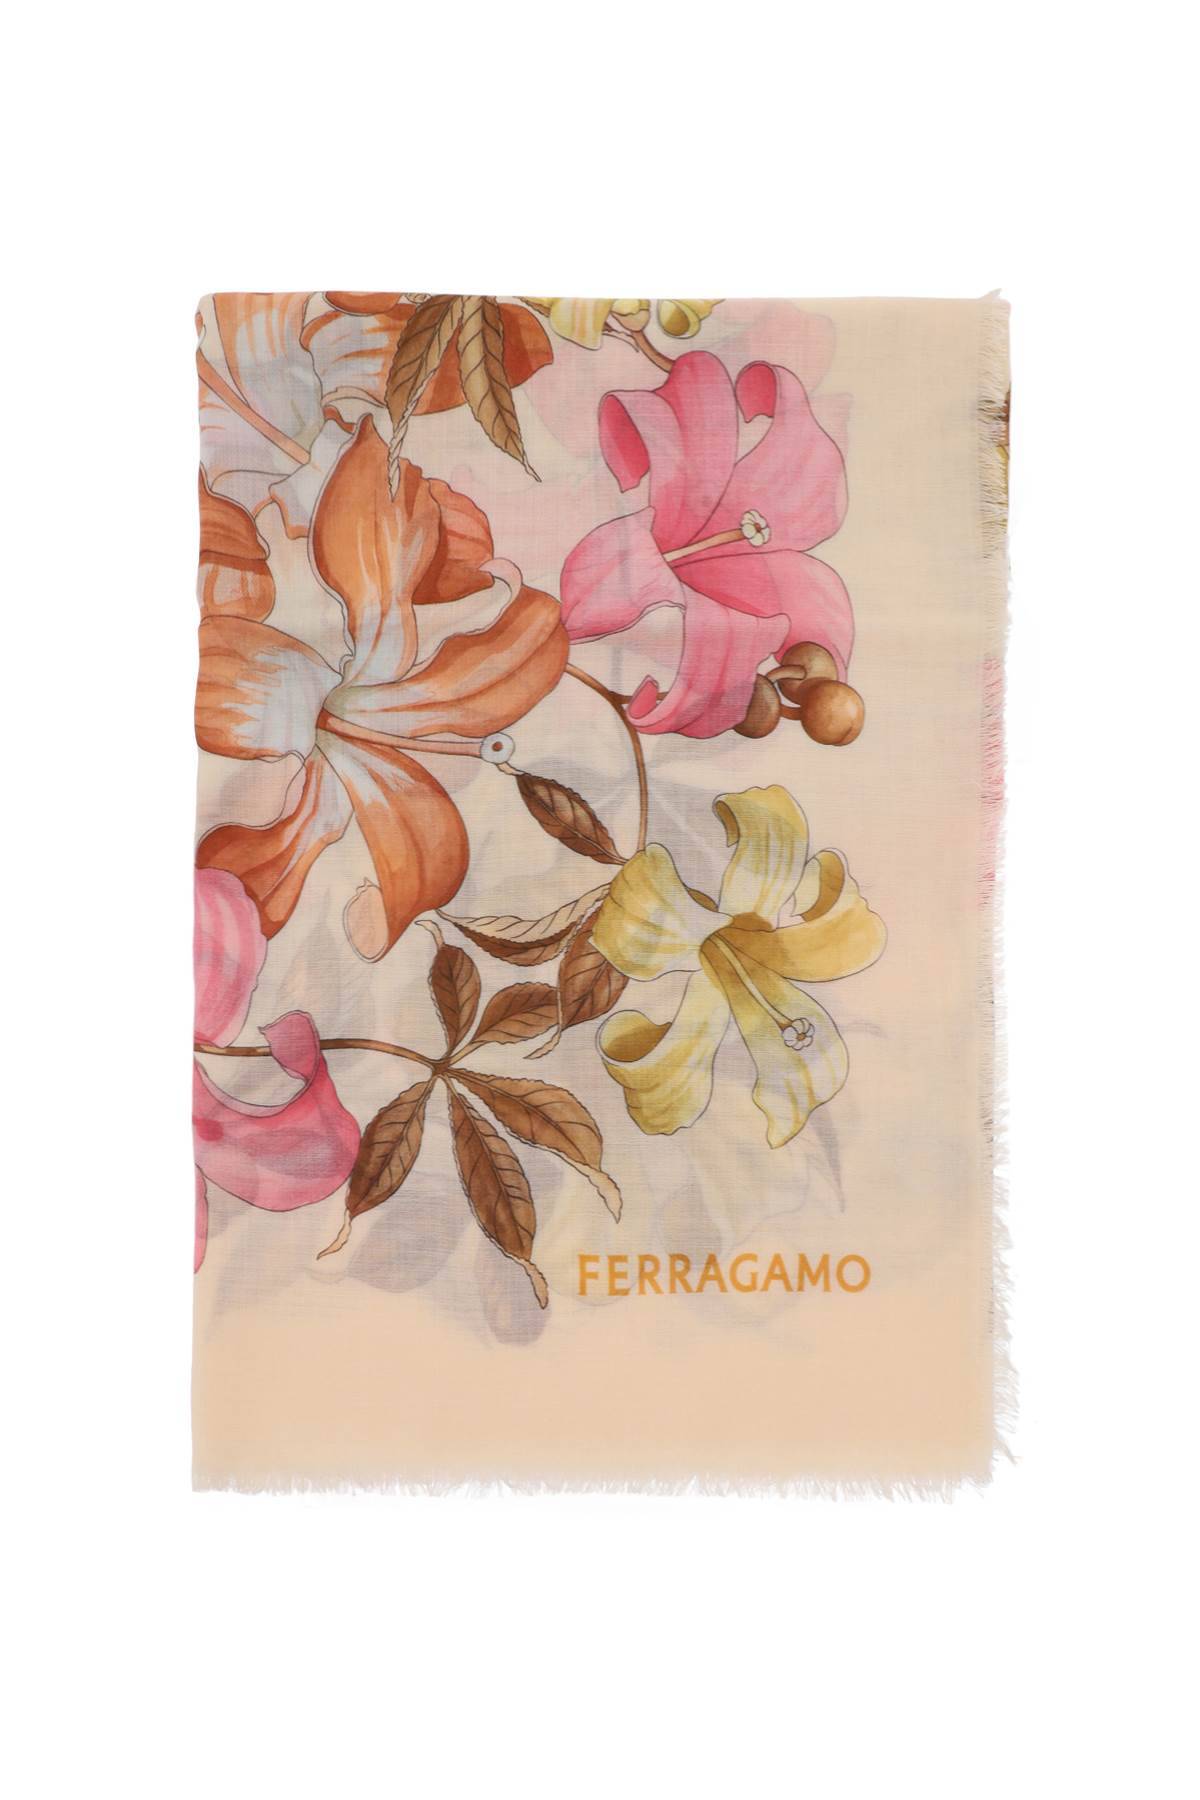 Ferragamo FERRAGAMO cashmere stole with hibiscus print